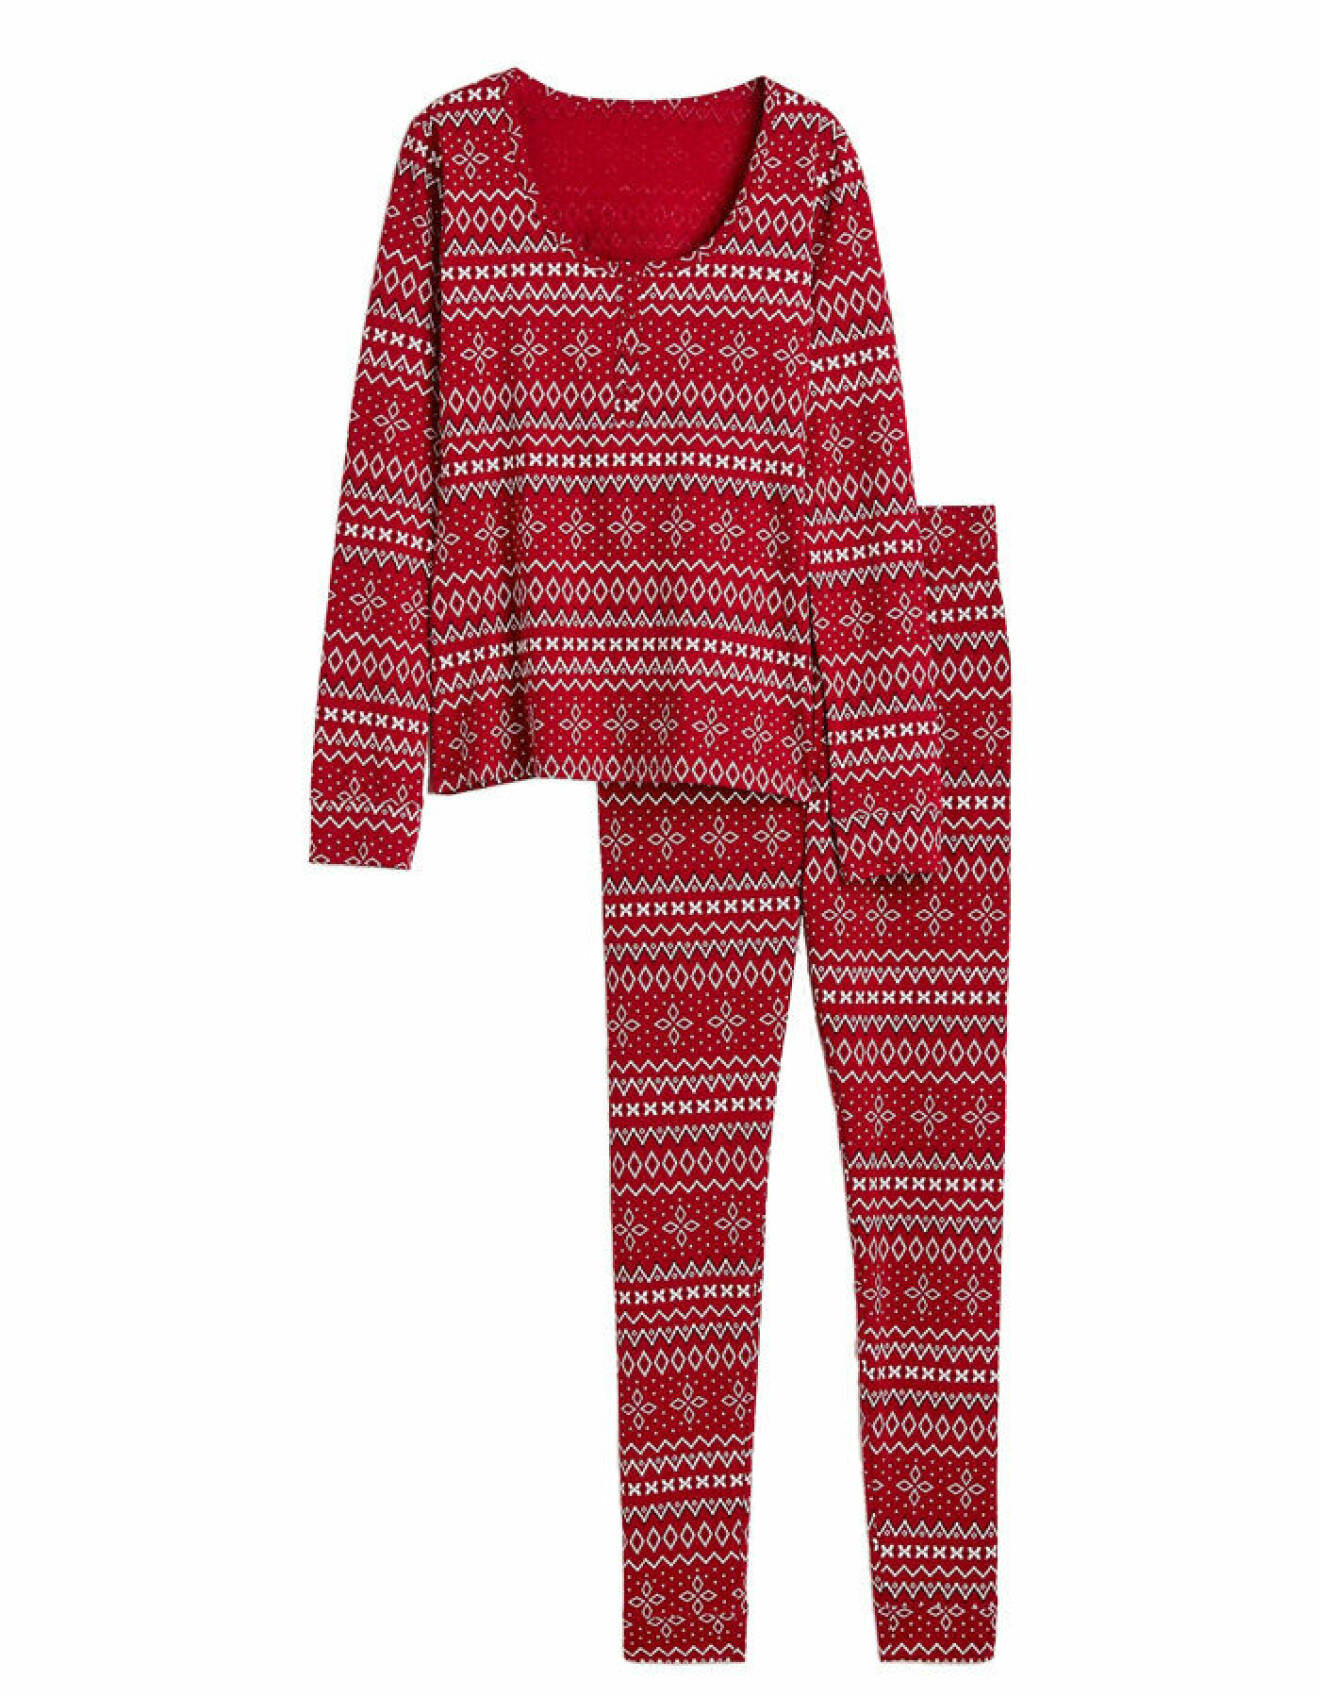 röd mönstrad bomullspyjamas med figurnära passform tillverkad i bomull från H&amp;M